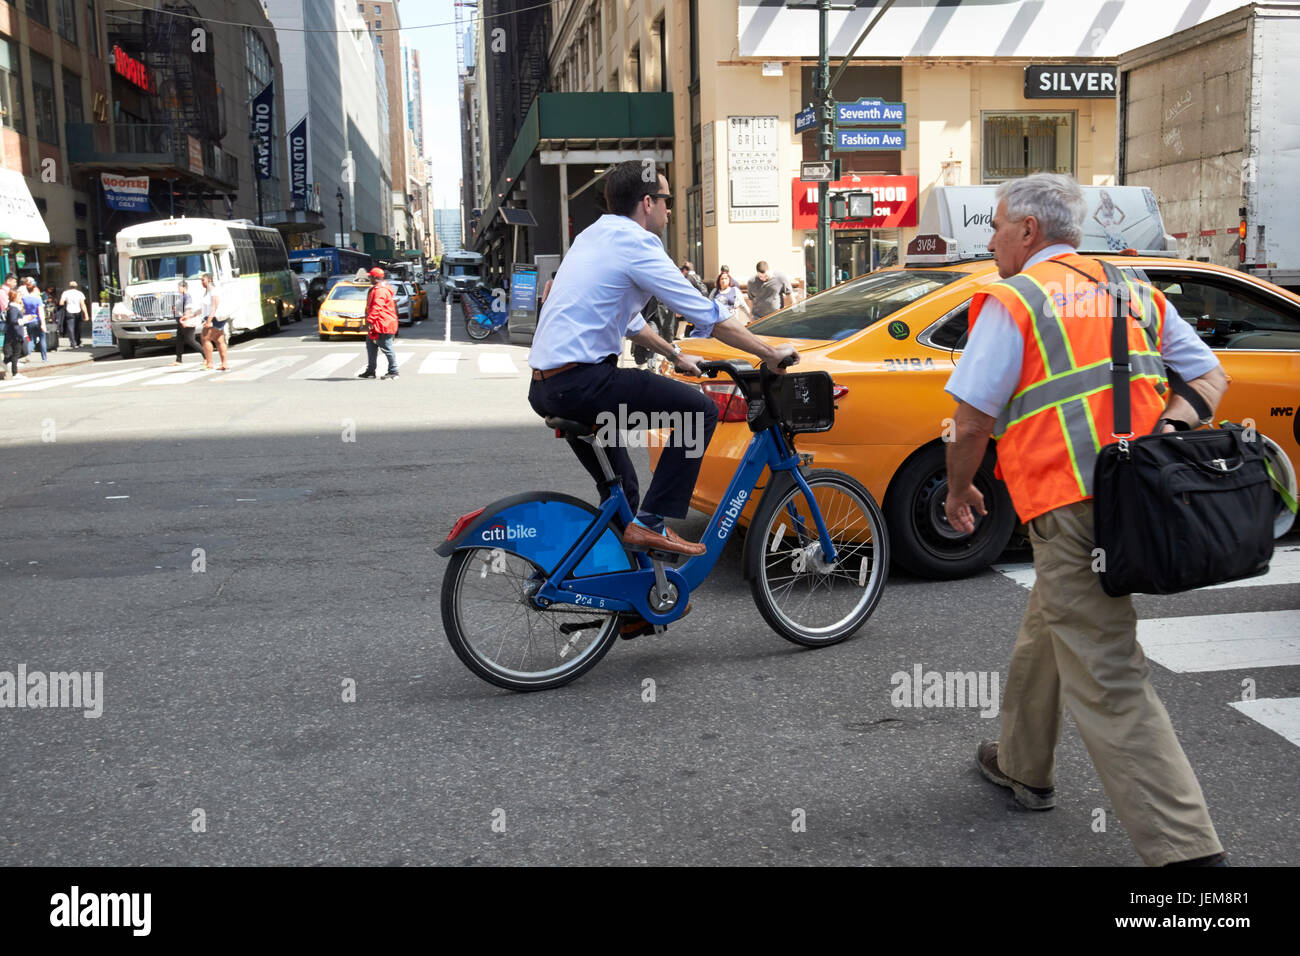 L'homme sur le vélo Vélo vélo de location citi embauché régime homme marchant et taxi manhattan New York USA Banque D'Images